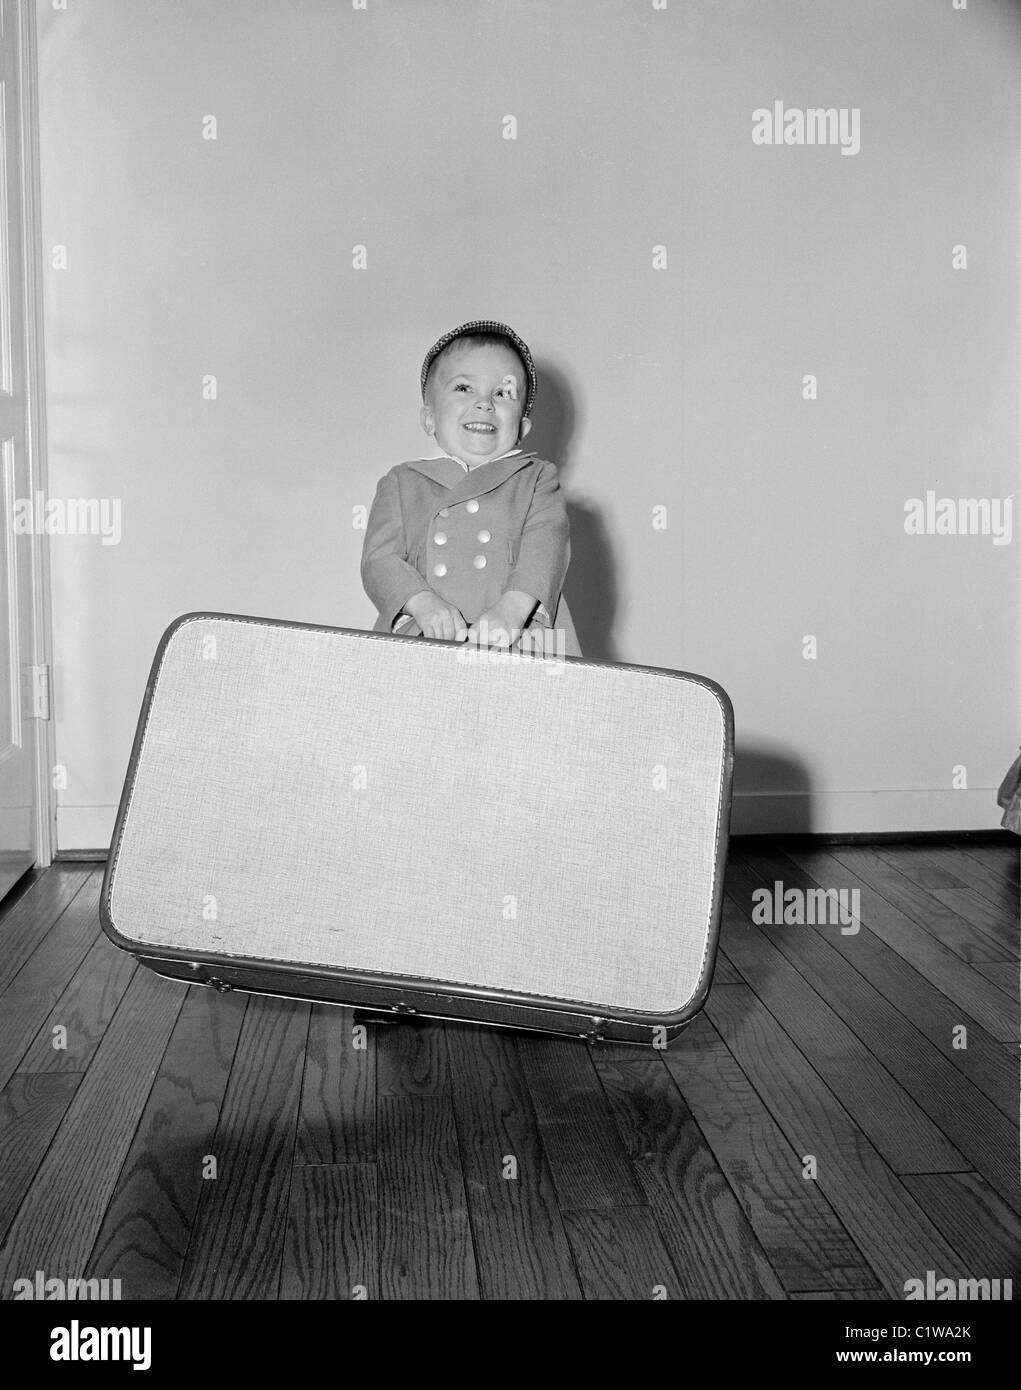 Boy holding large suitcase Stock Photo